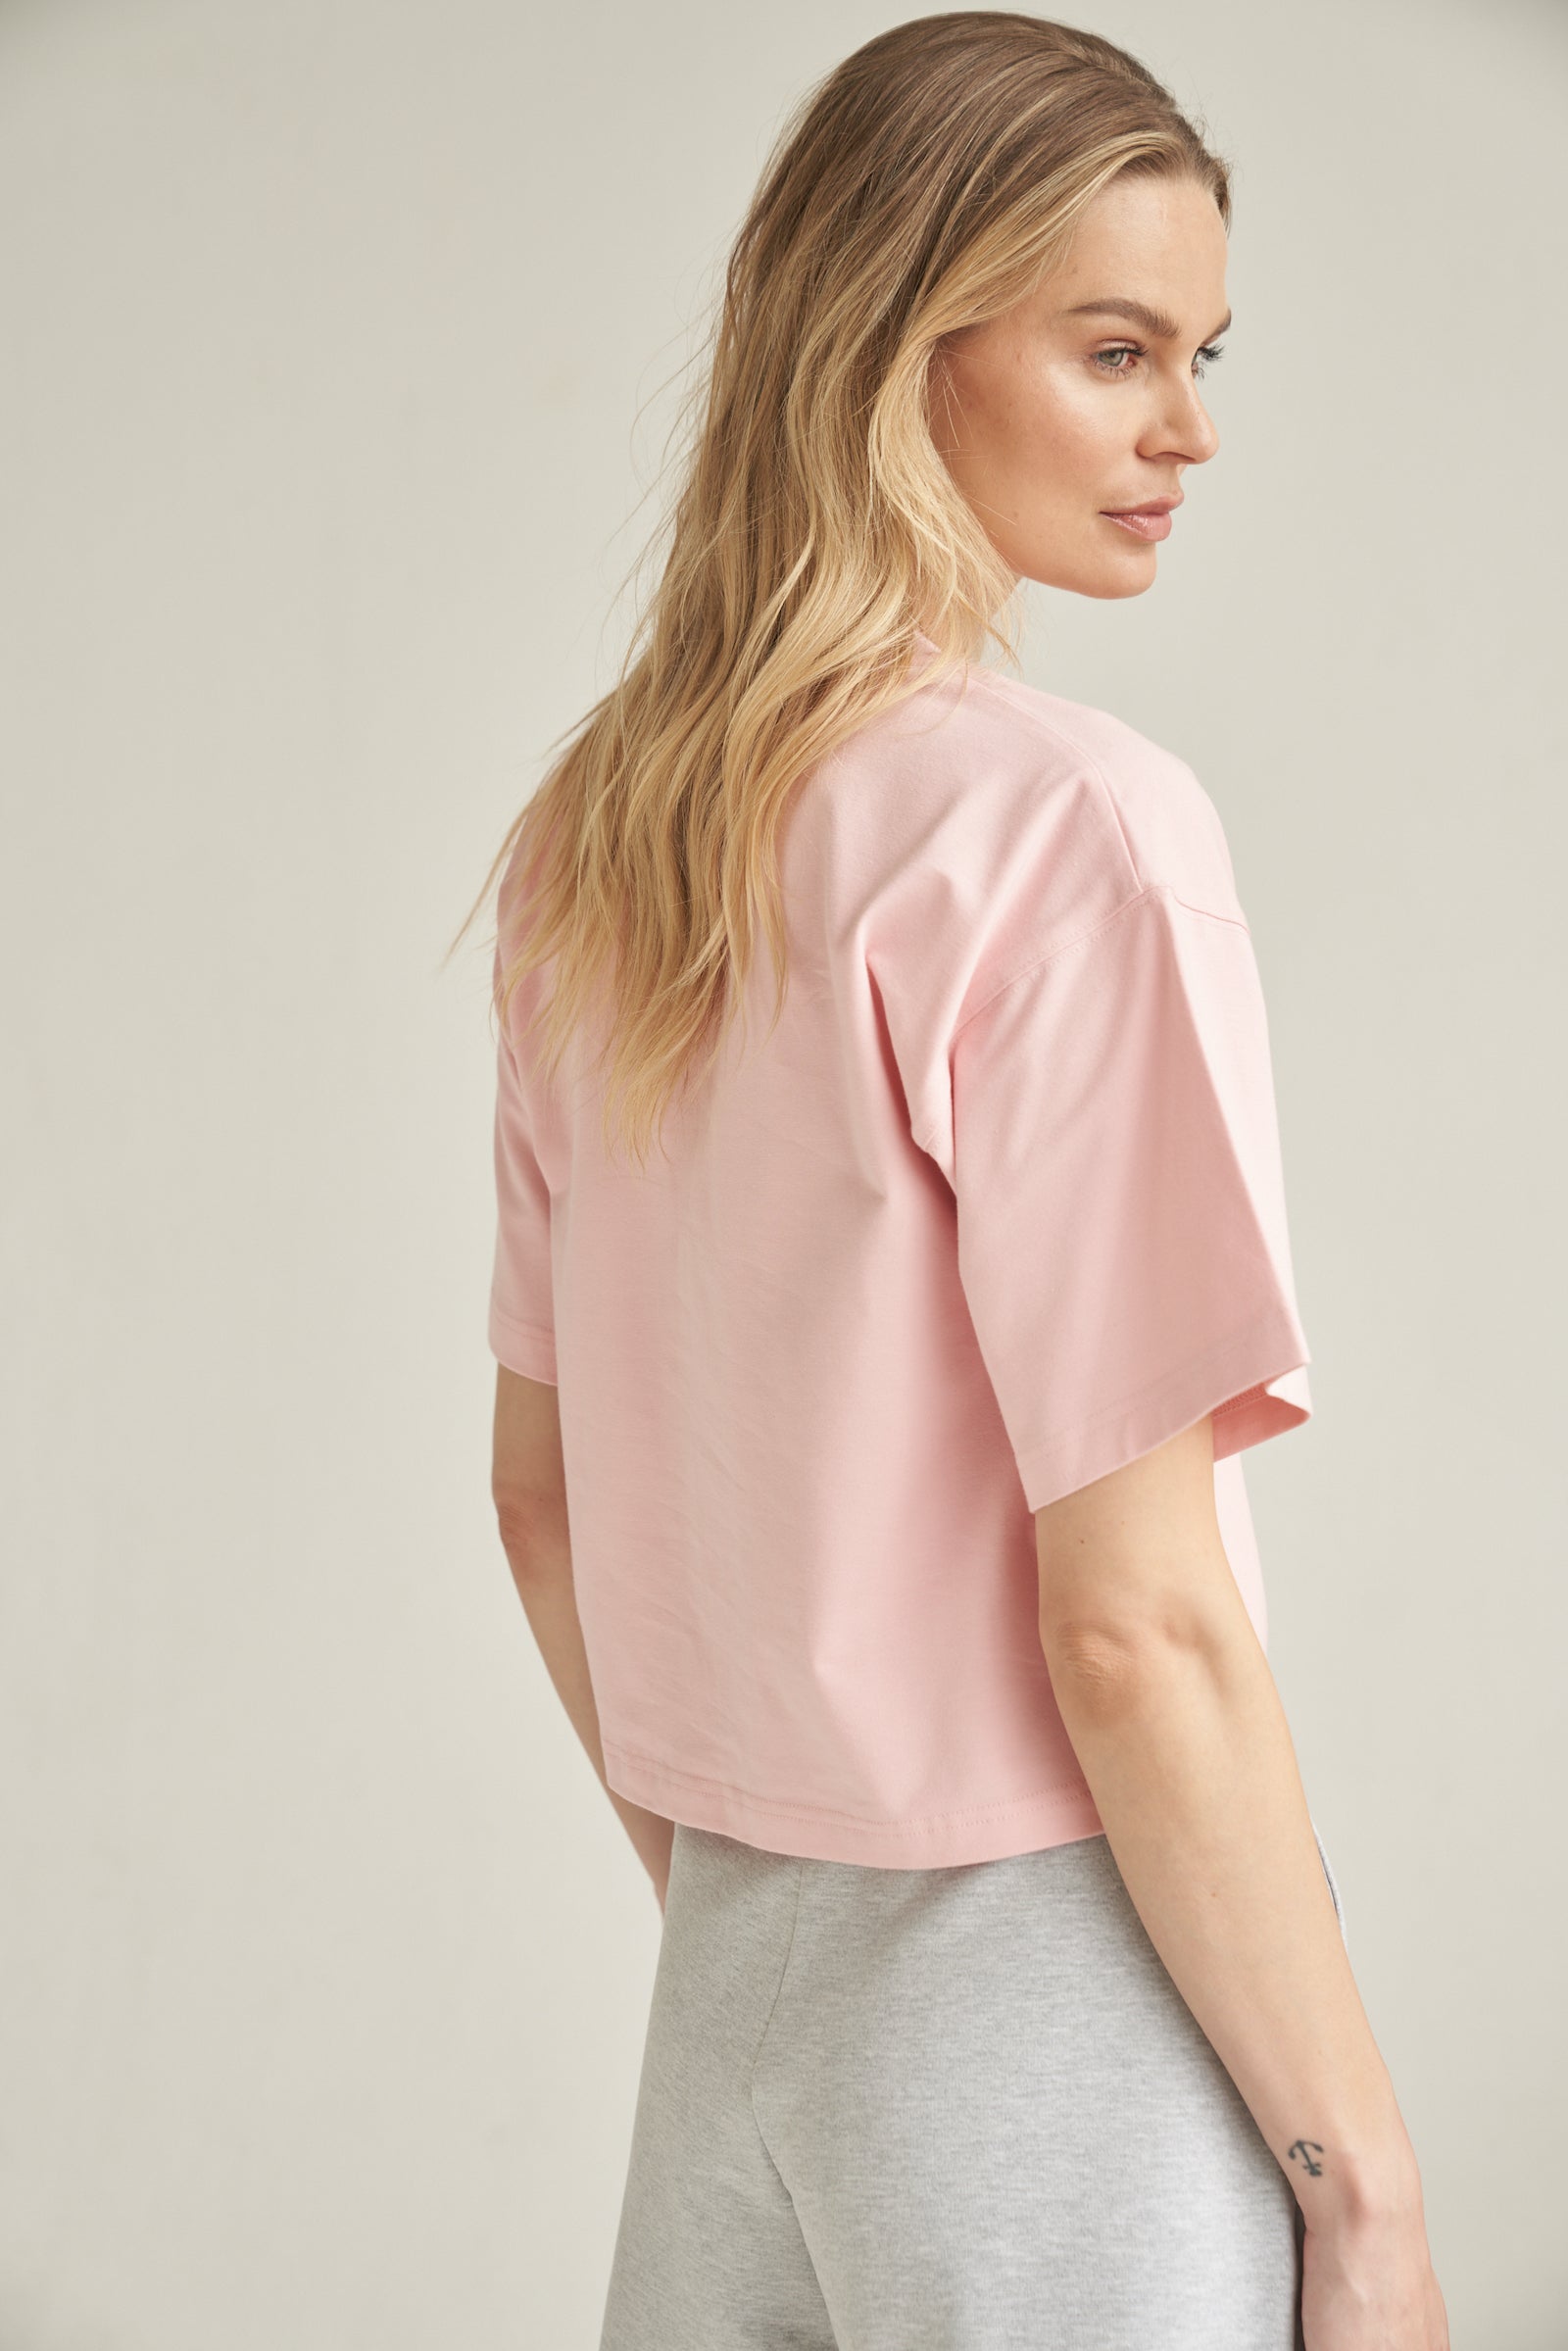 Unser T-Shirt aus Bio-Baumwolle in der Farbe rosa von der Marke Bellasor wird von einem blonden Model getragen. Sie steht vor einem hellen Hintergrund und zeigt das T-Shirt seitlich von hinten. Sie trägt dazu eine hellgraue Short von Bellasor.